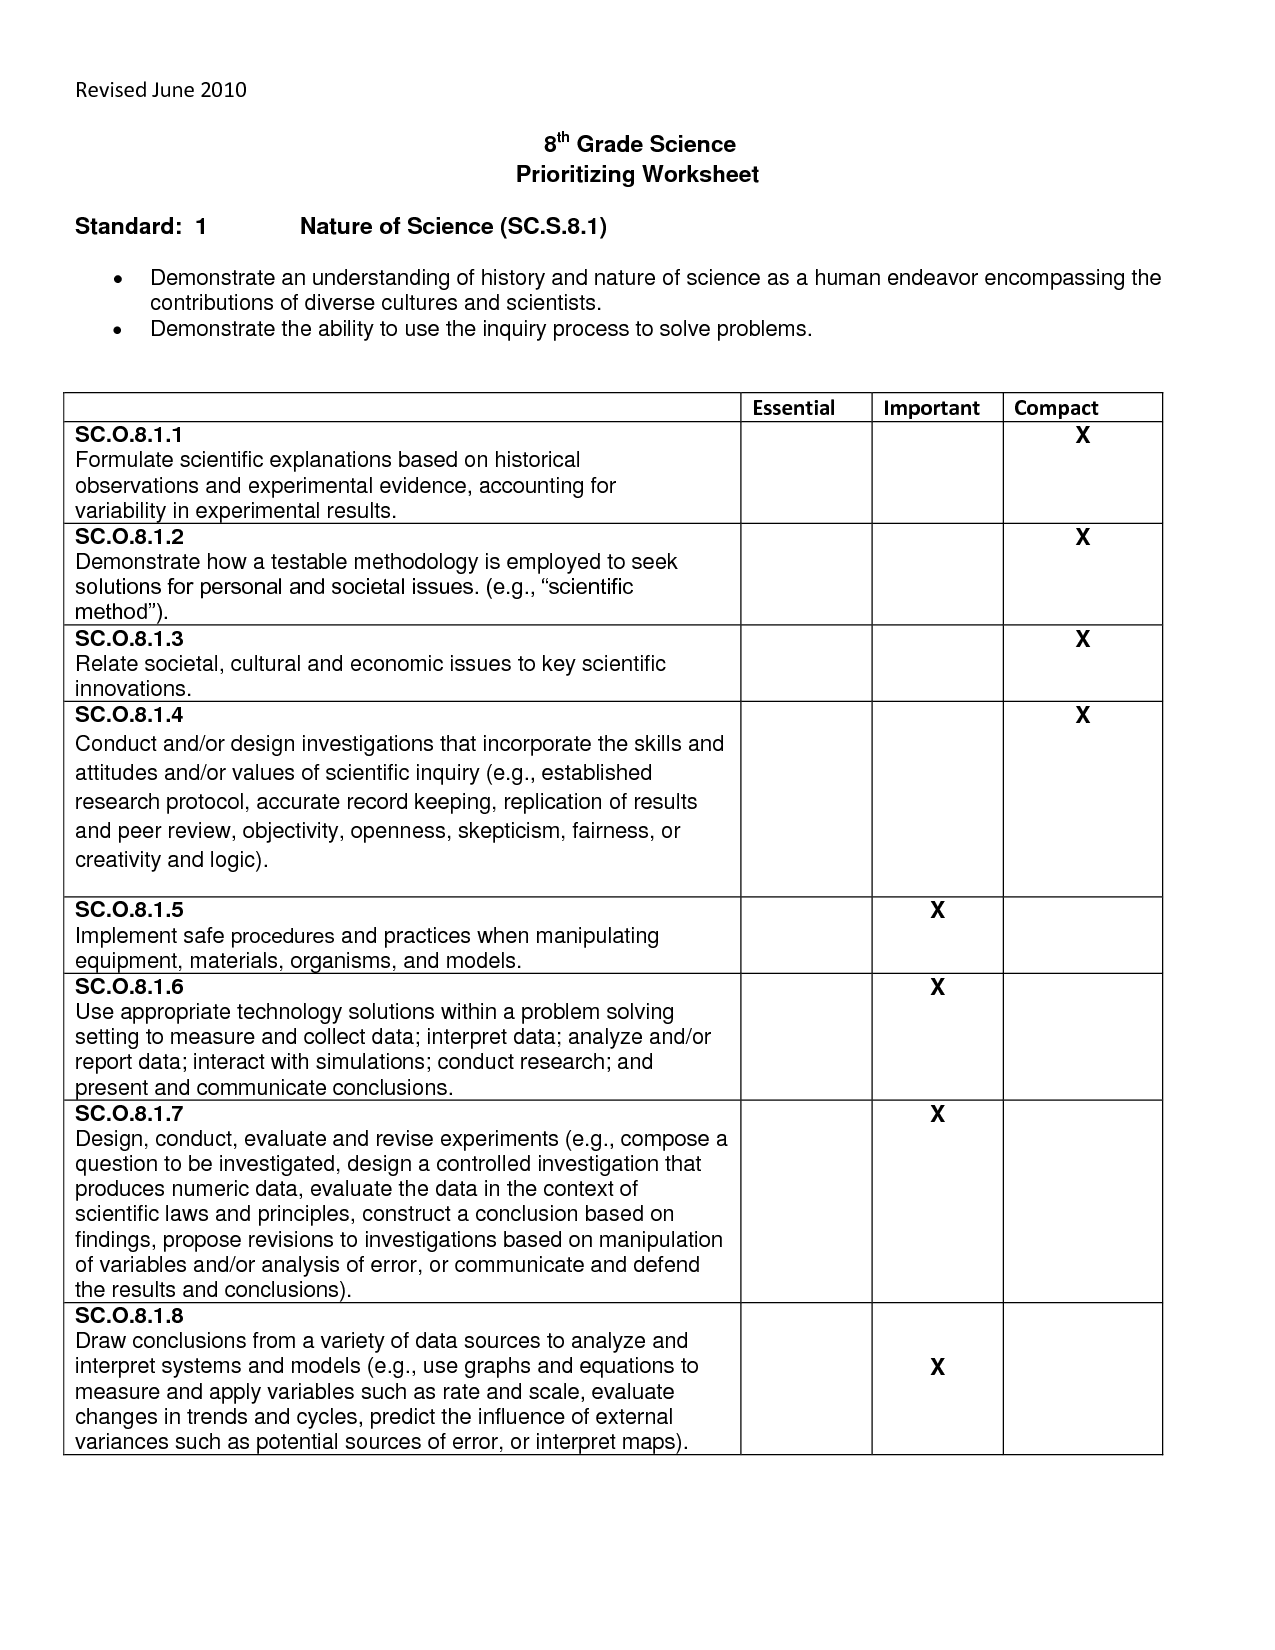 8th Grade Science Scientific Method Worksheet Image